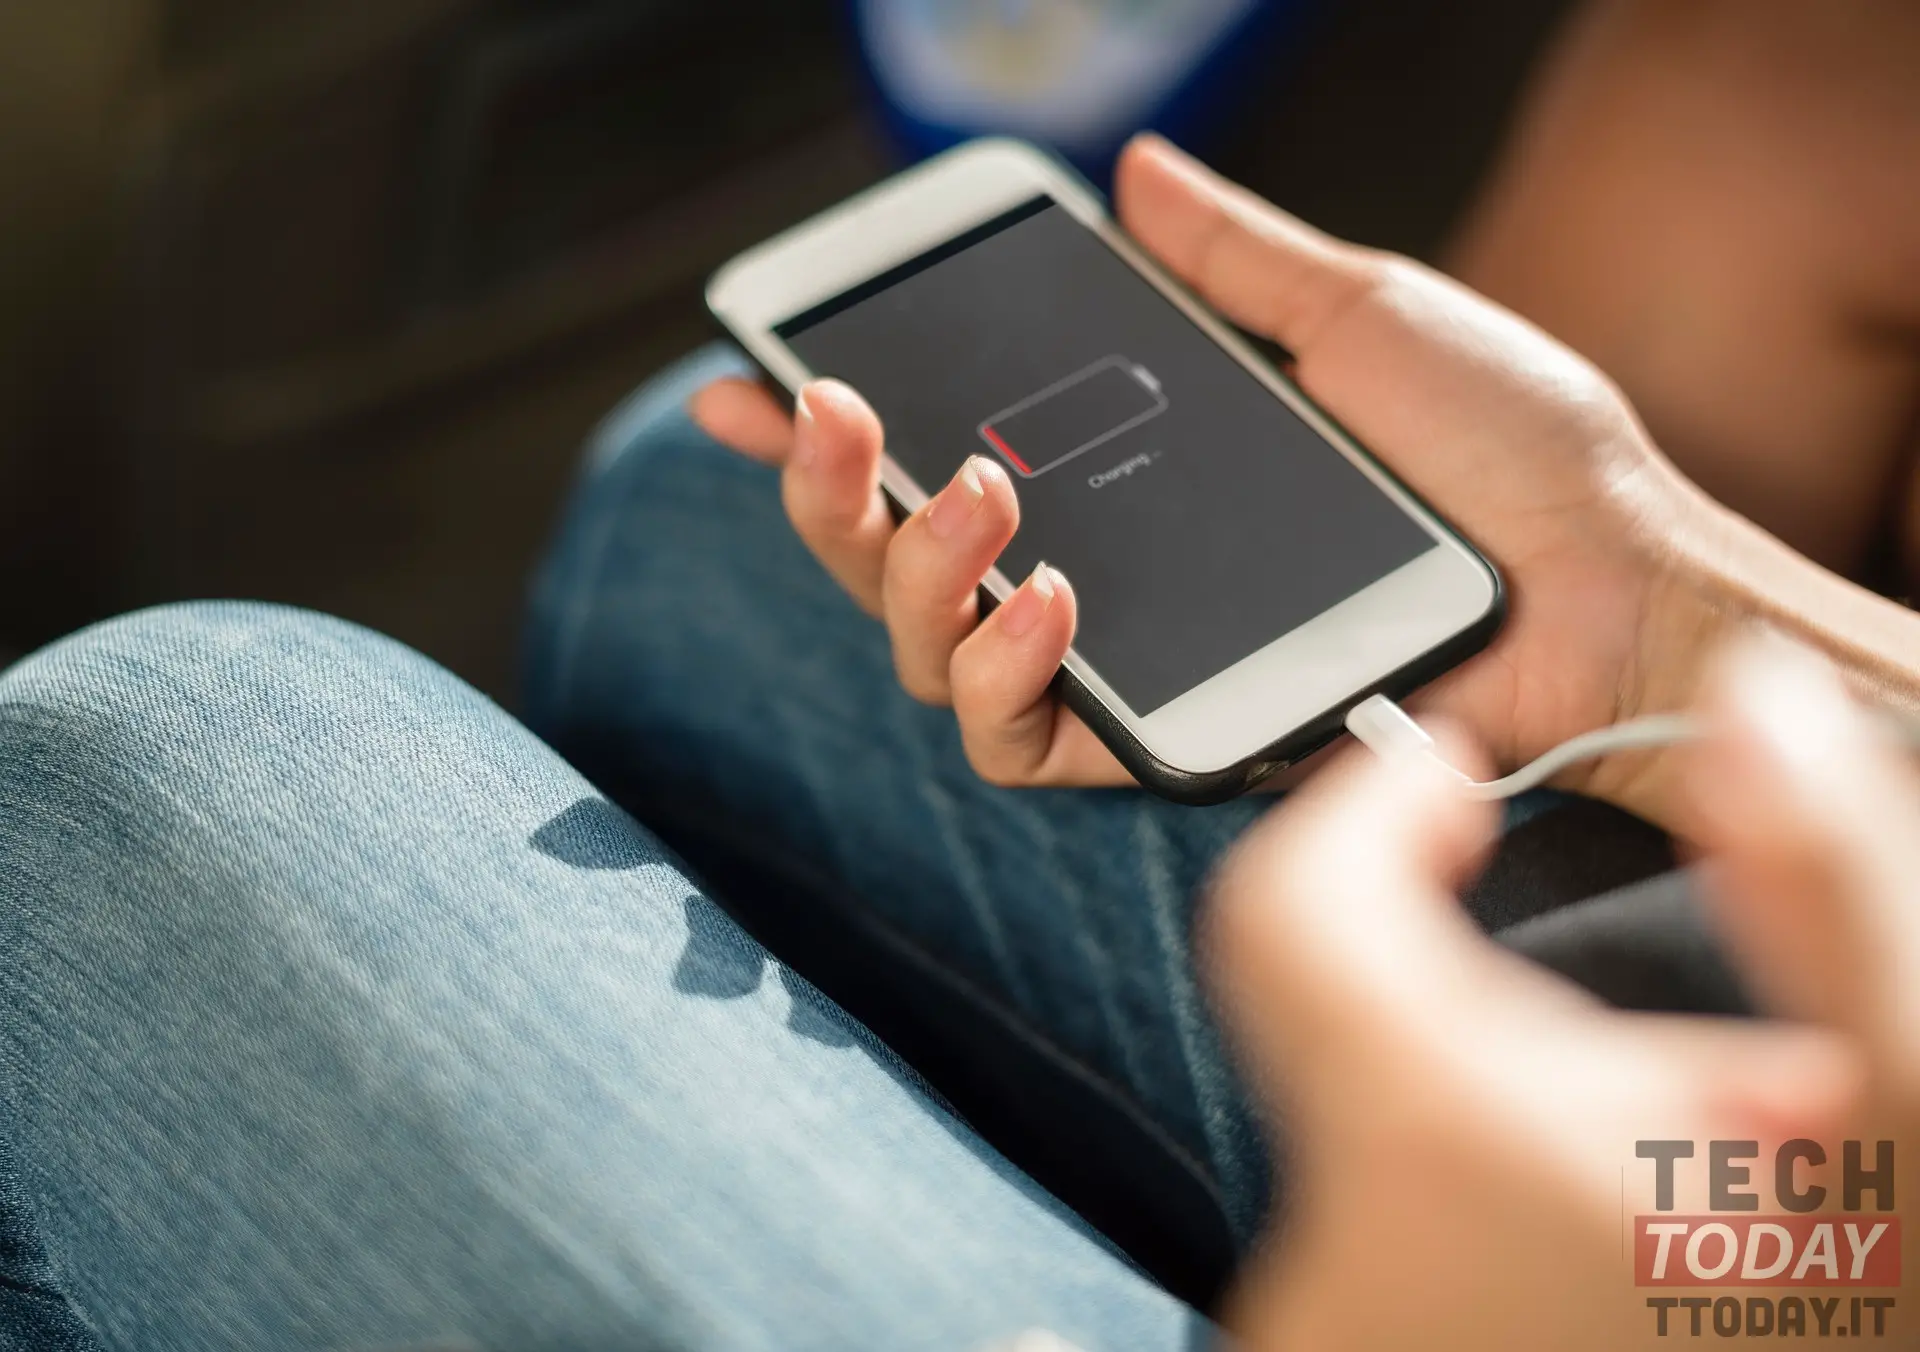 Un nouveau matériel vous permet de recharger votre smartphone 10 fois plus rapidement